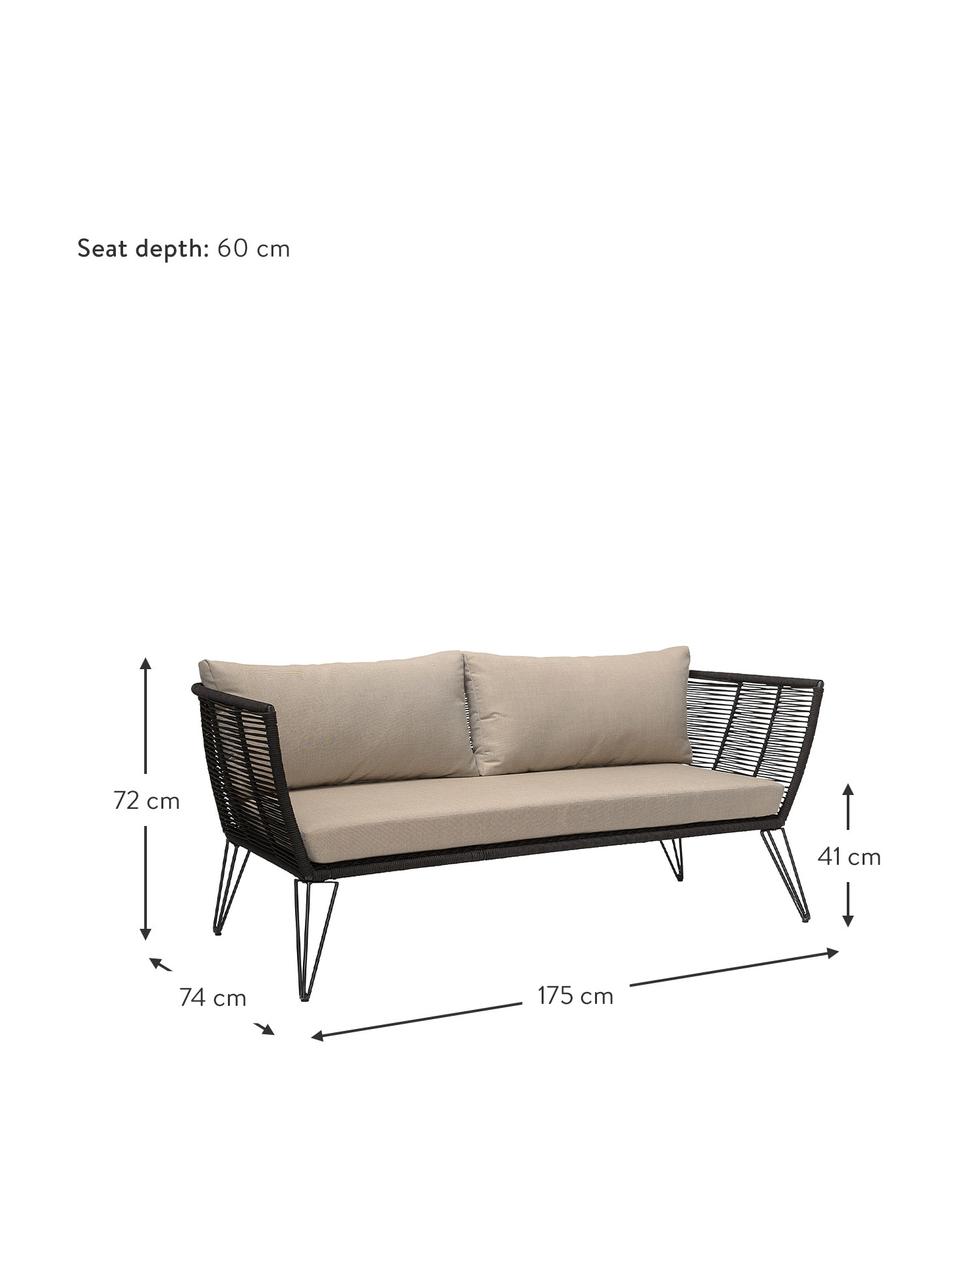 Garten-Loungesofa Mundo mit Kunststoff-Geflecht (2-Sitzer), Gestell: Metall, pulverbeschichtet, Sitzfläche: Polyethylen, Bezug: Polyester, Schwarz, Beige, B 175 x T 74 cm